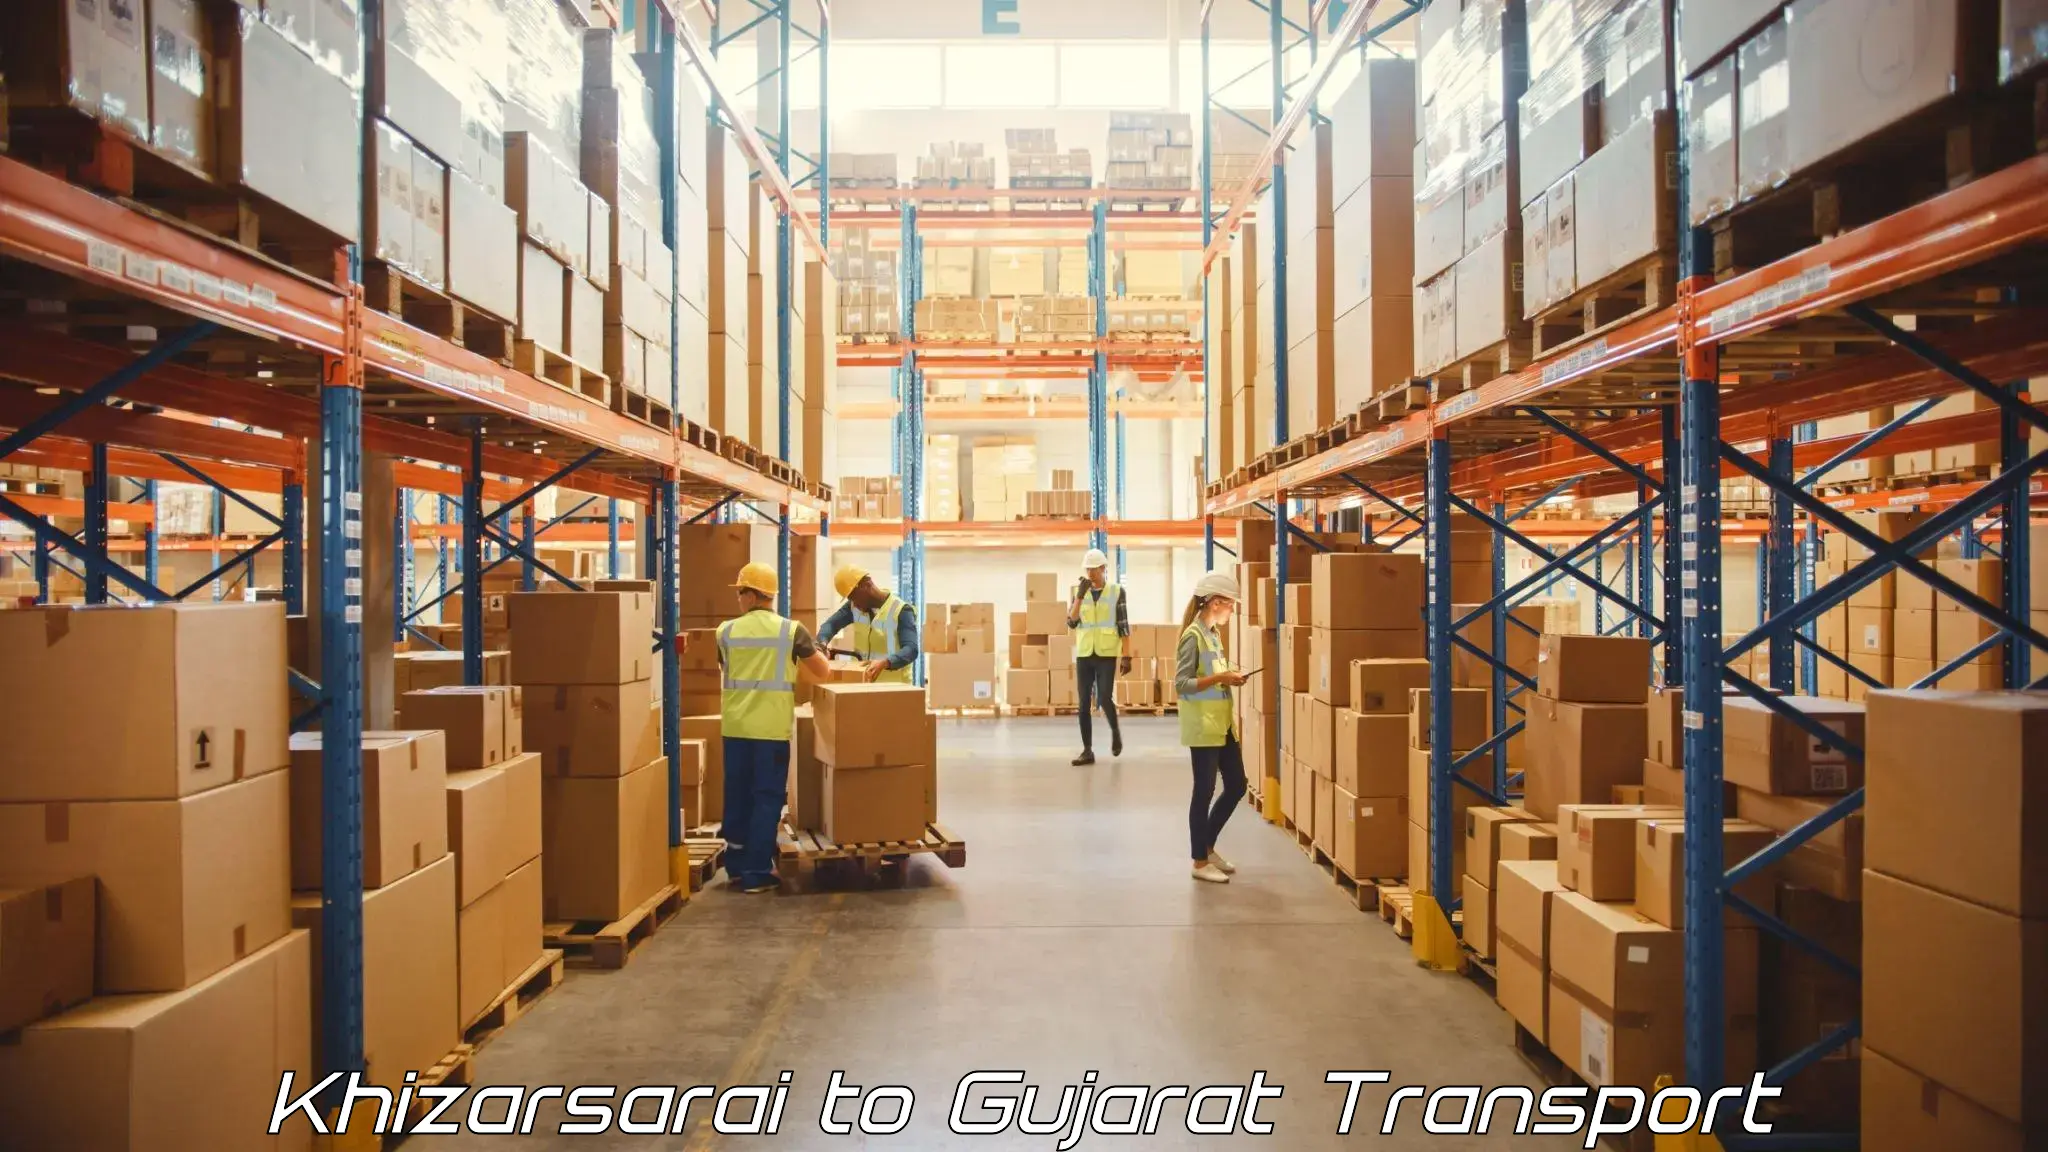 Container transport service Khizarsarai to Mahuva